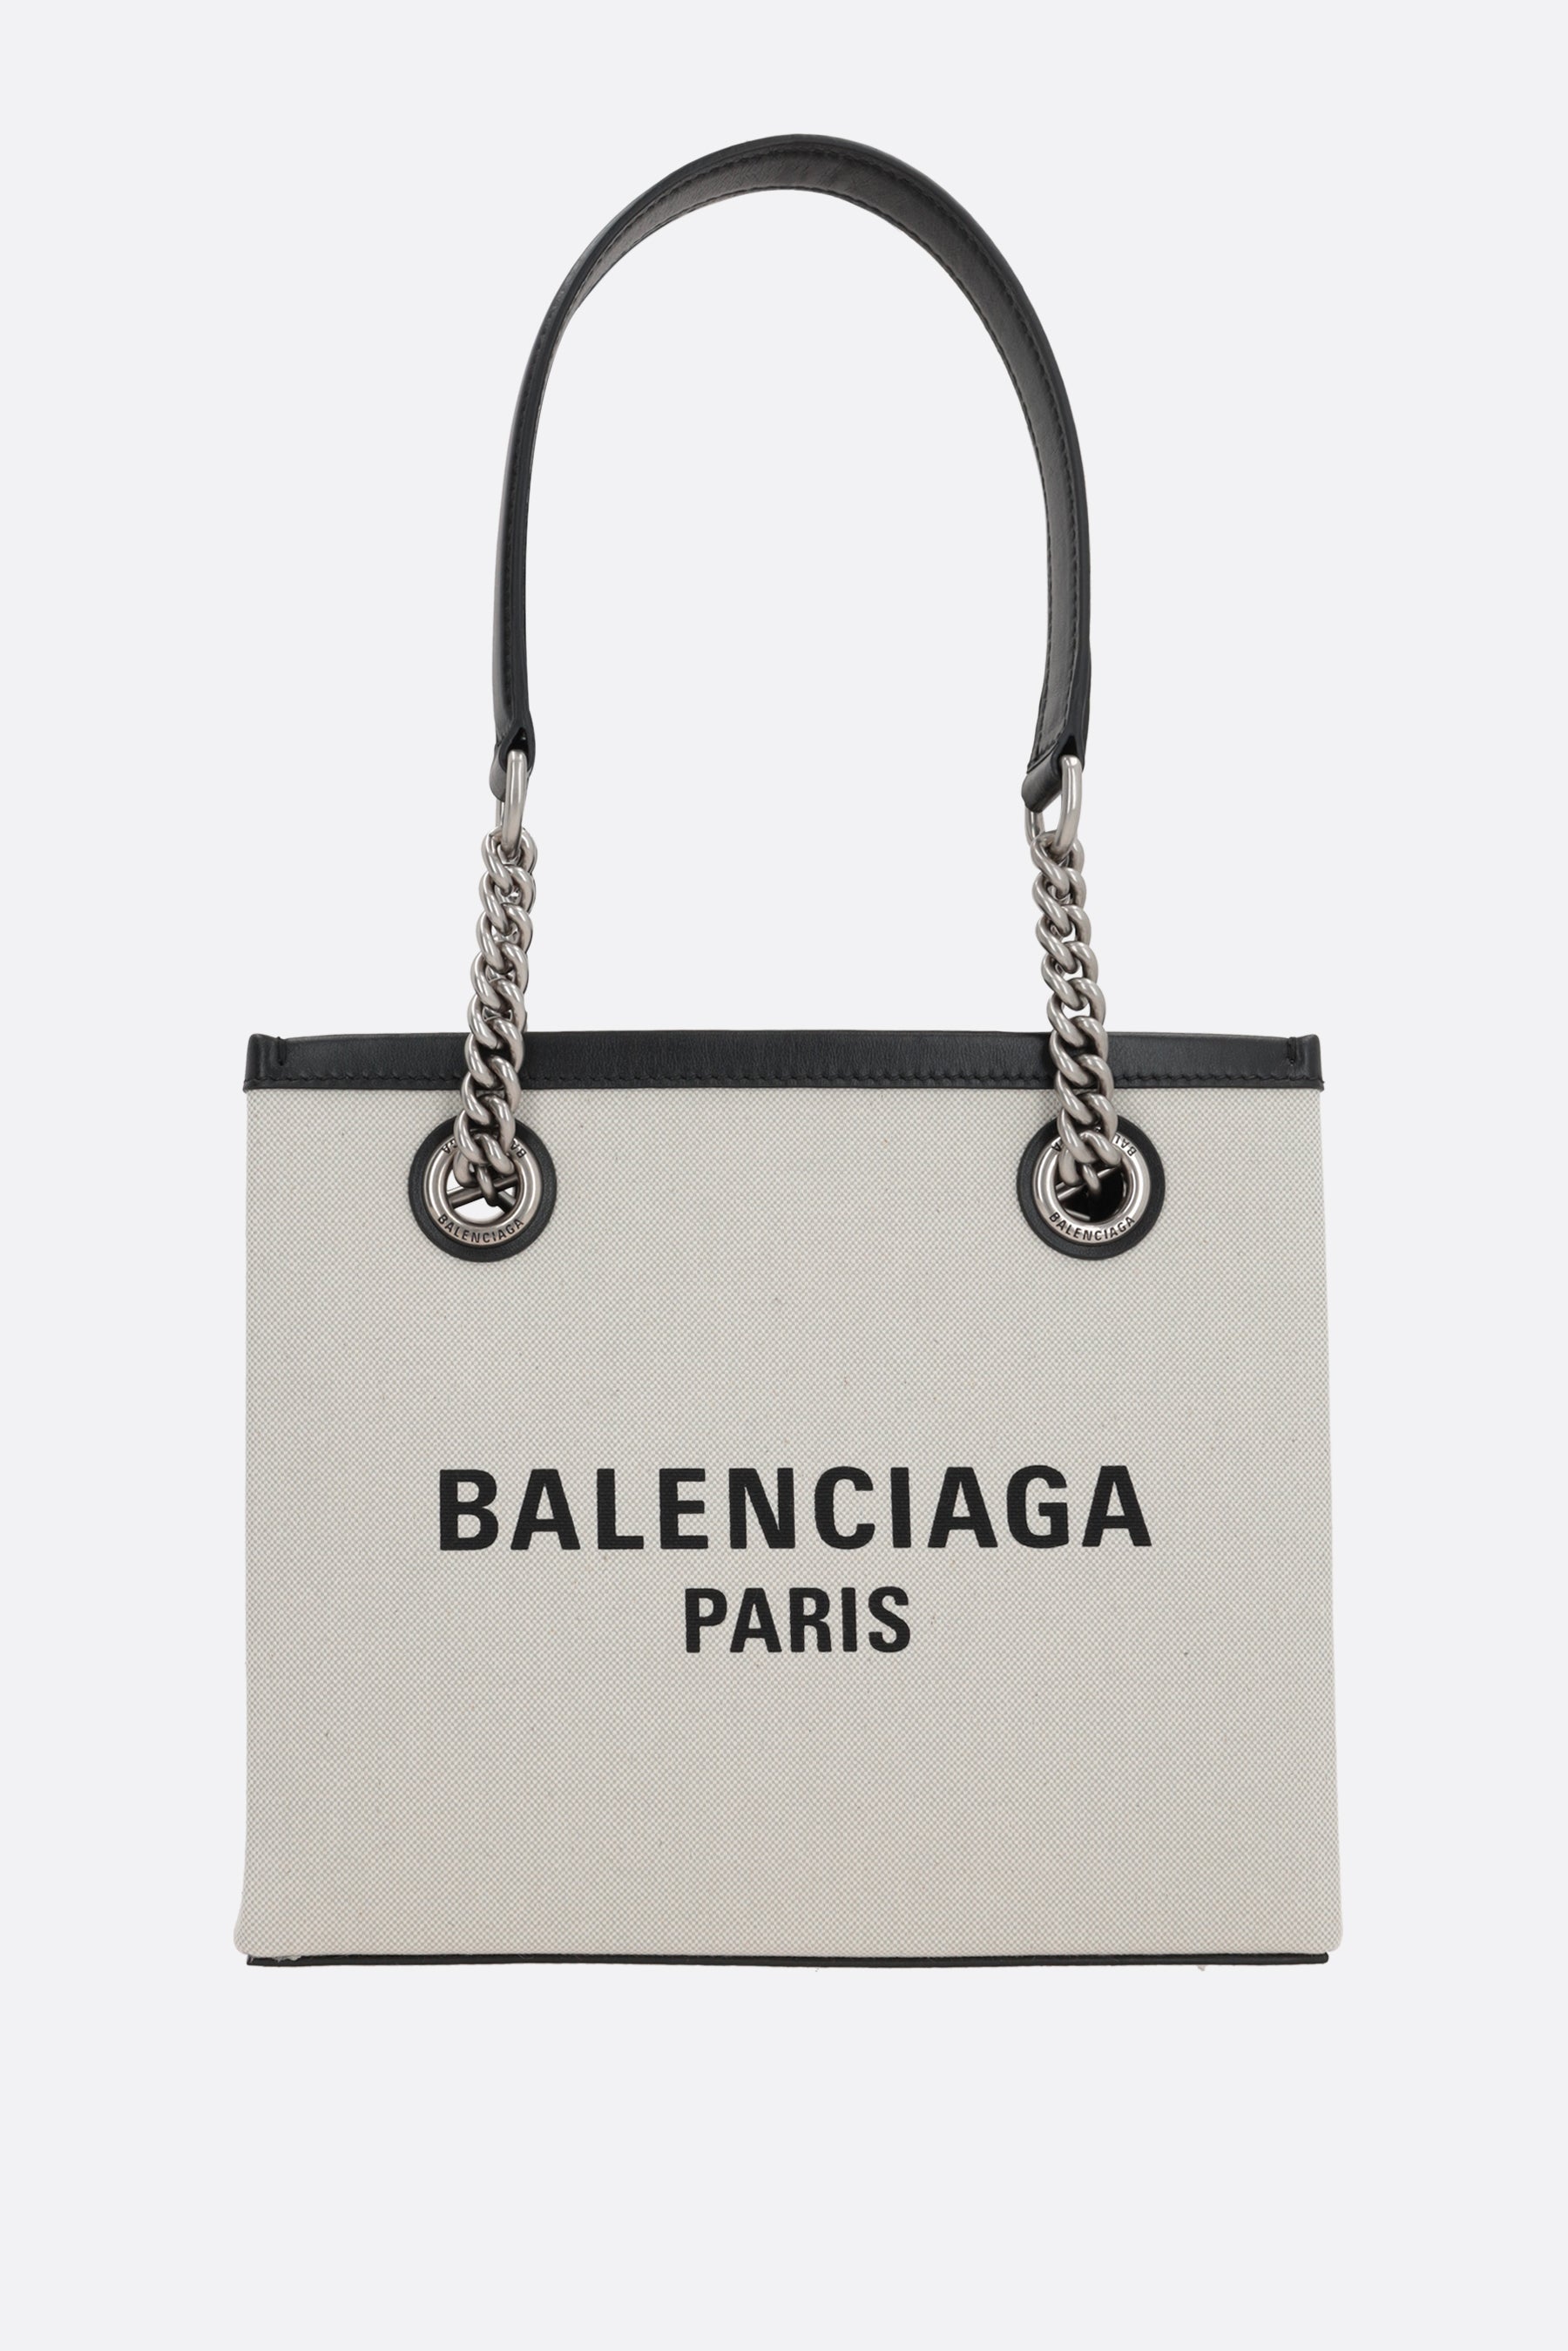 Balenciaga Women's Hardware Small Tote Bag with Strap - Natural - Totes